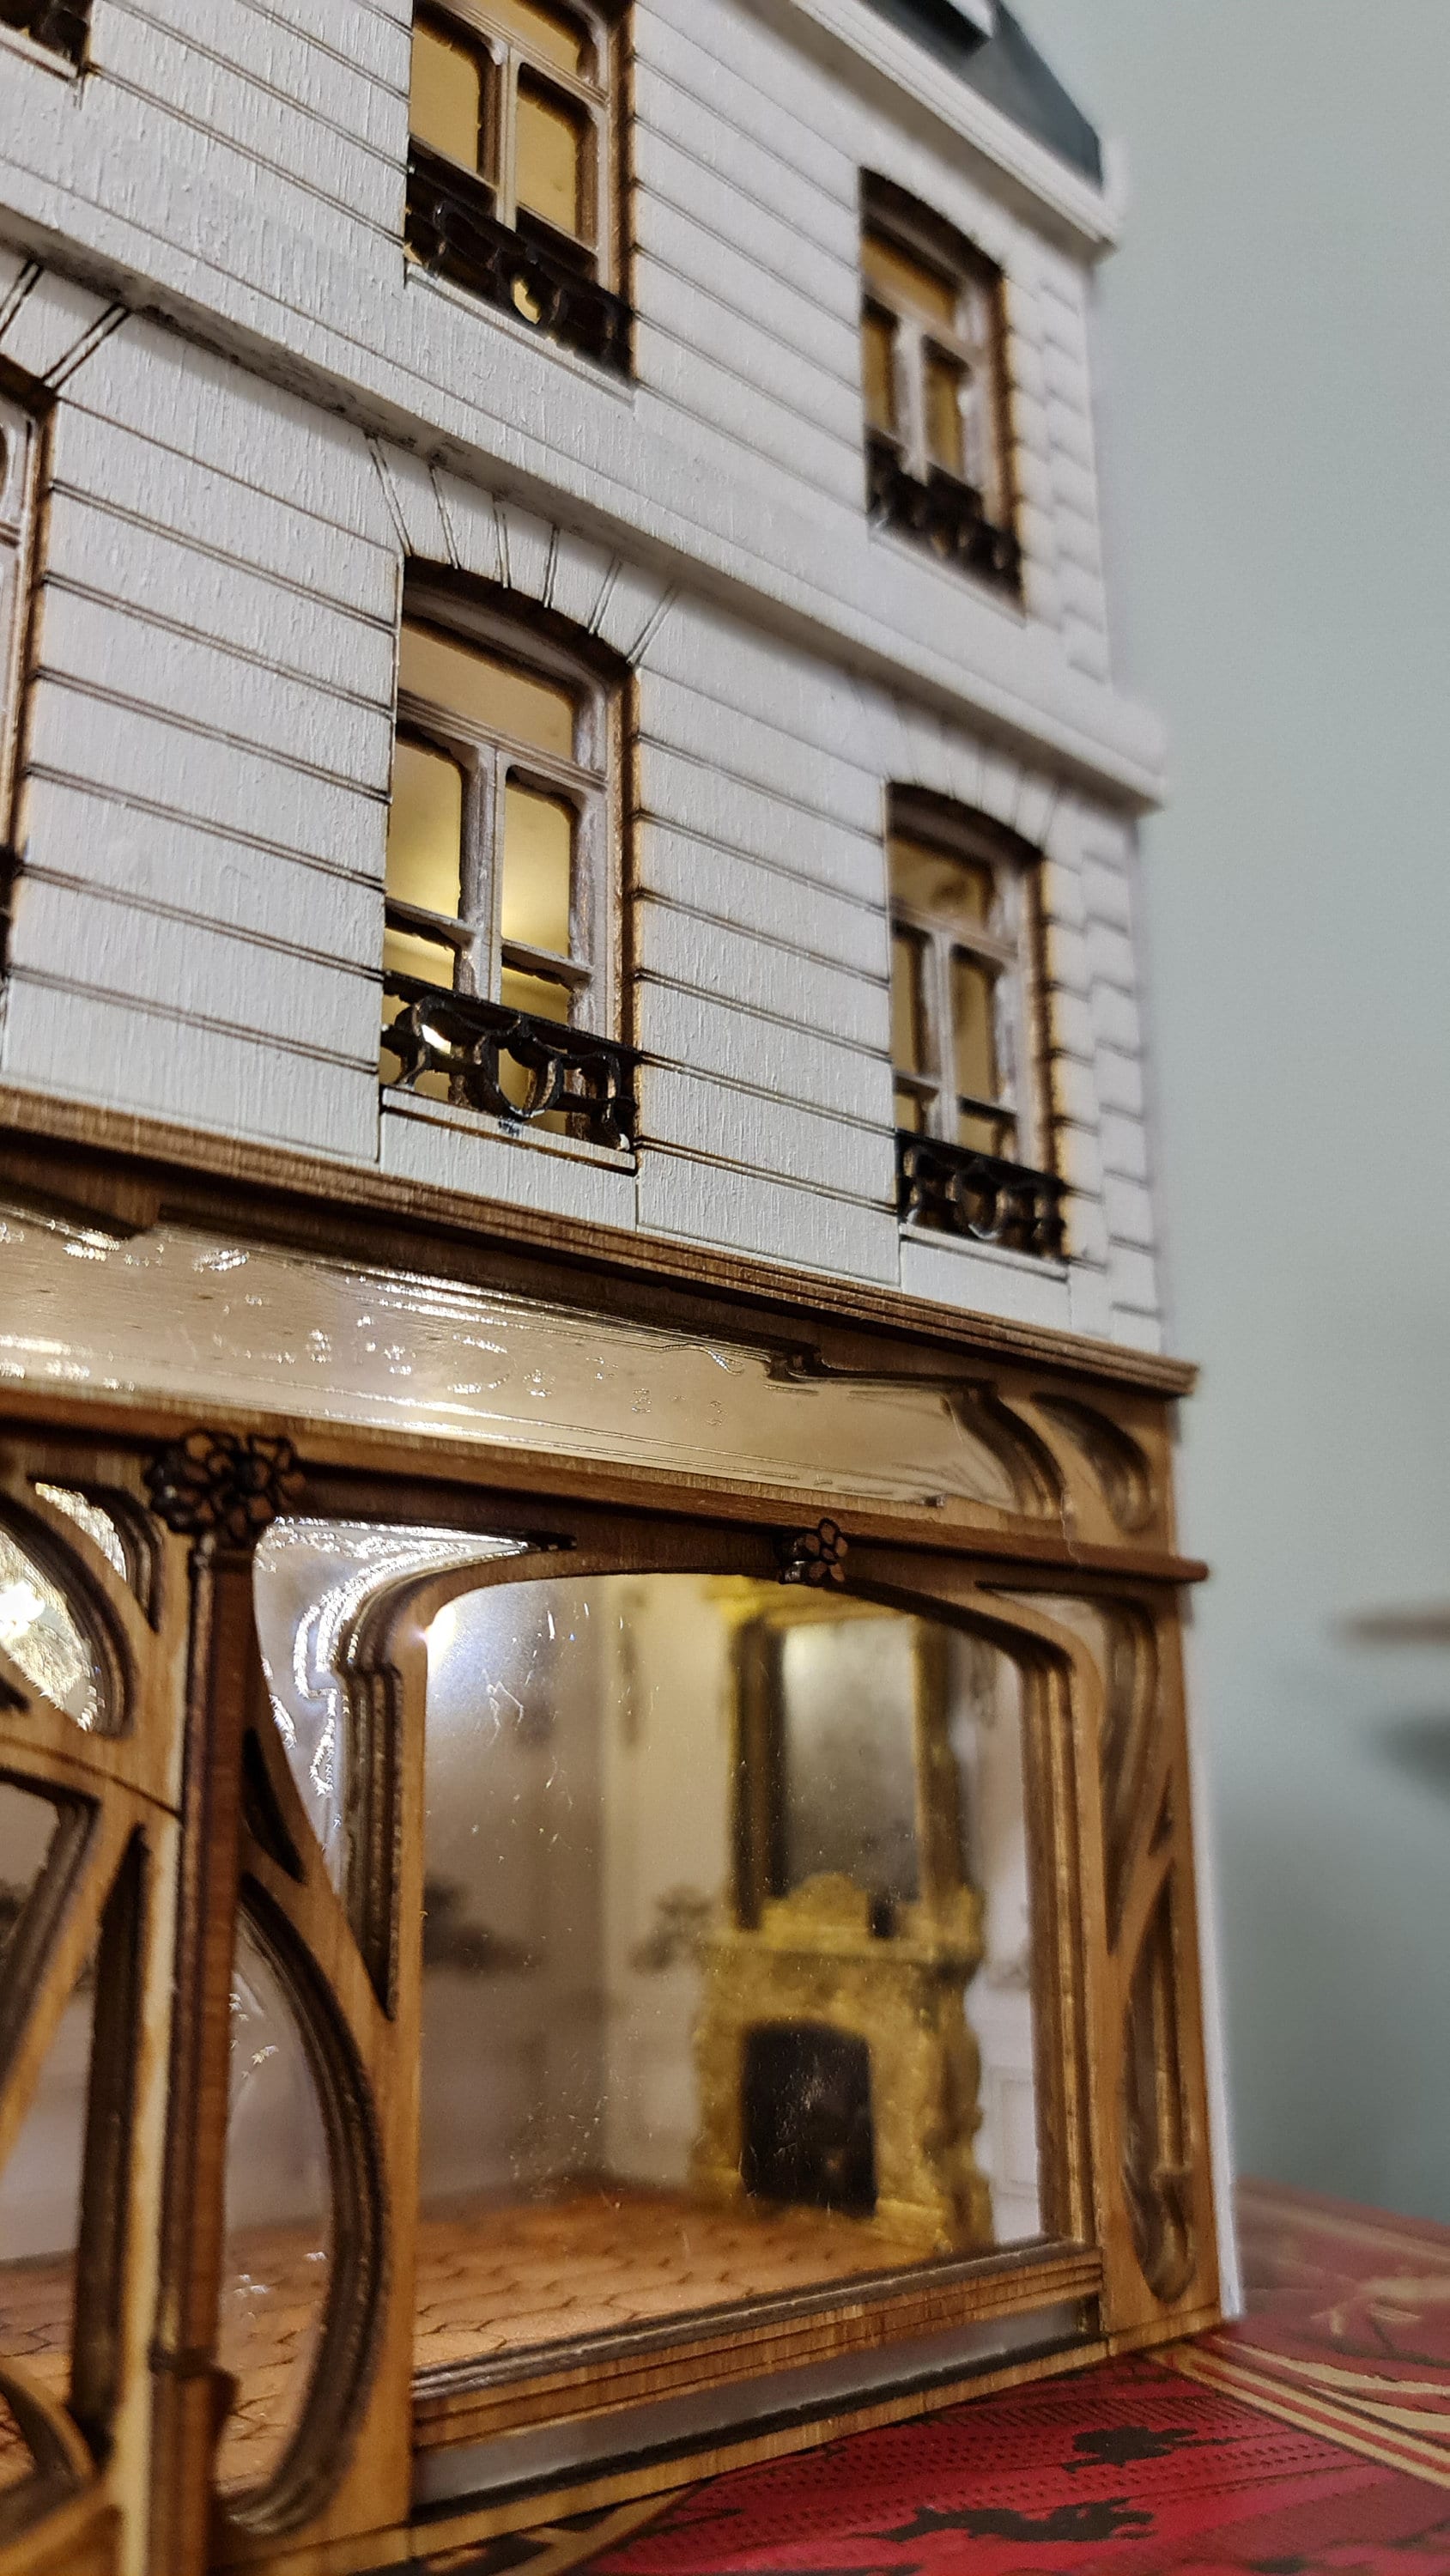 "Cafe De Paris" Miniature kit - 1:48th scale